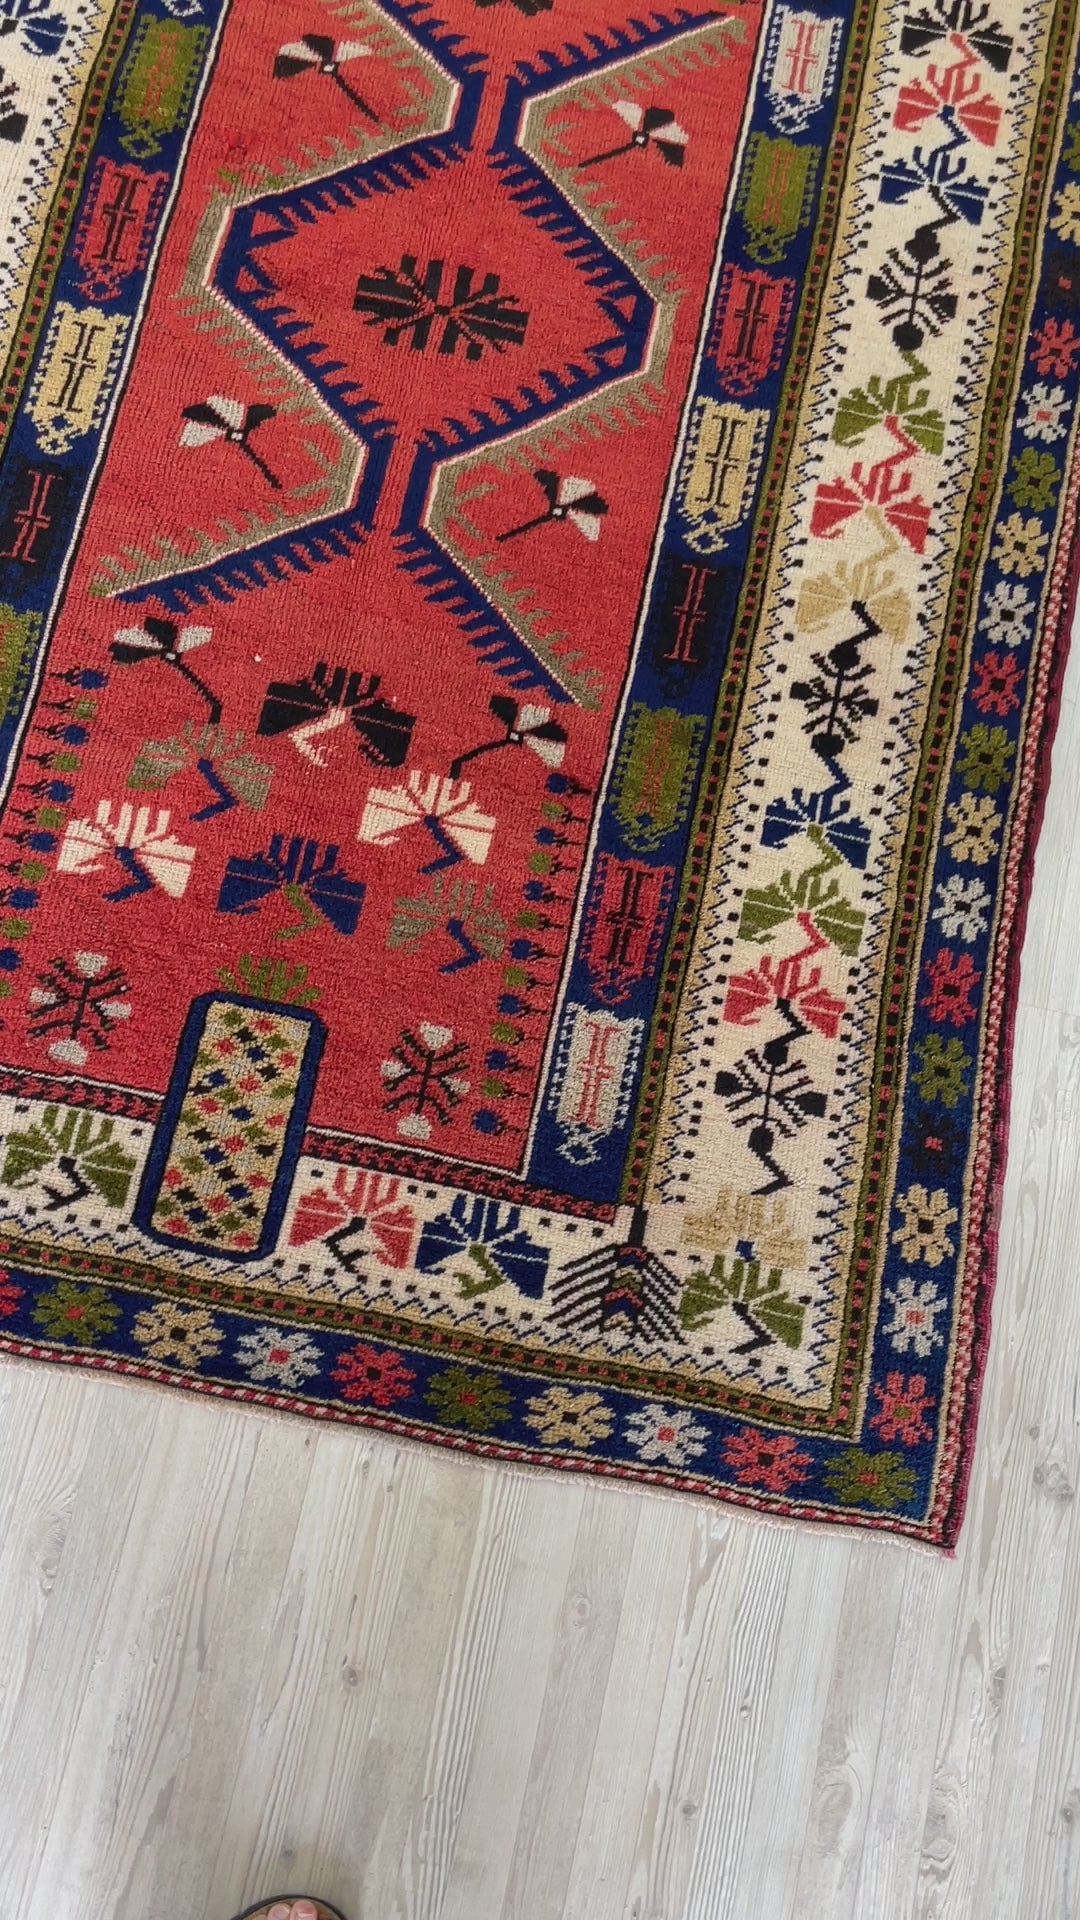 Taspinar vintage turkish rug shop palo alto oriental rug shop san francisco bay area berkeley rug shop buy rug online california ontario canada free shipping